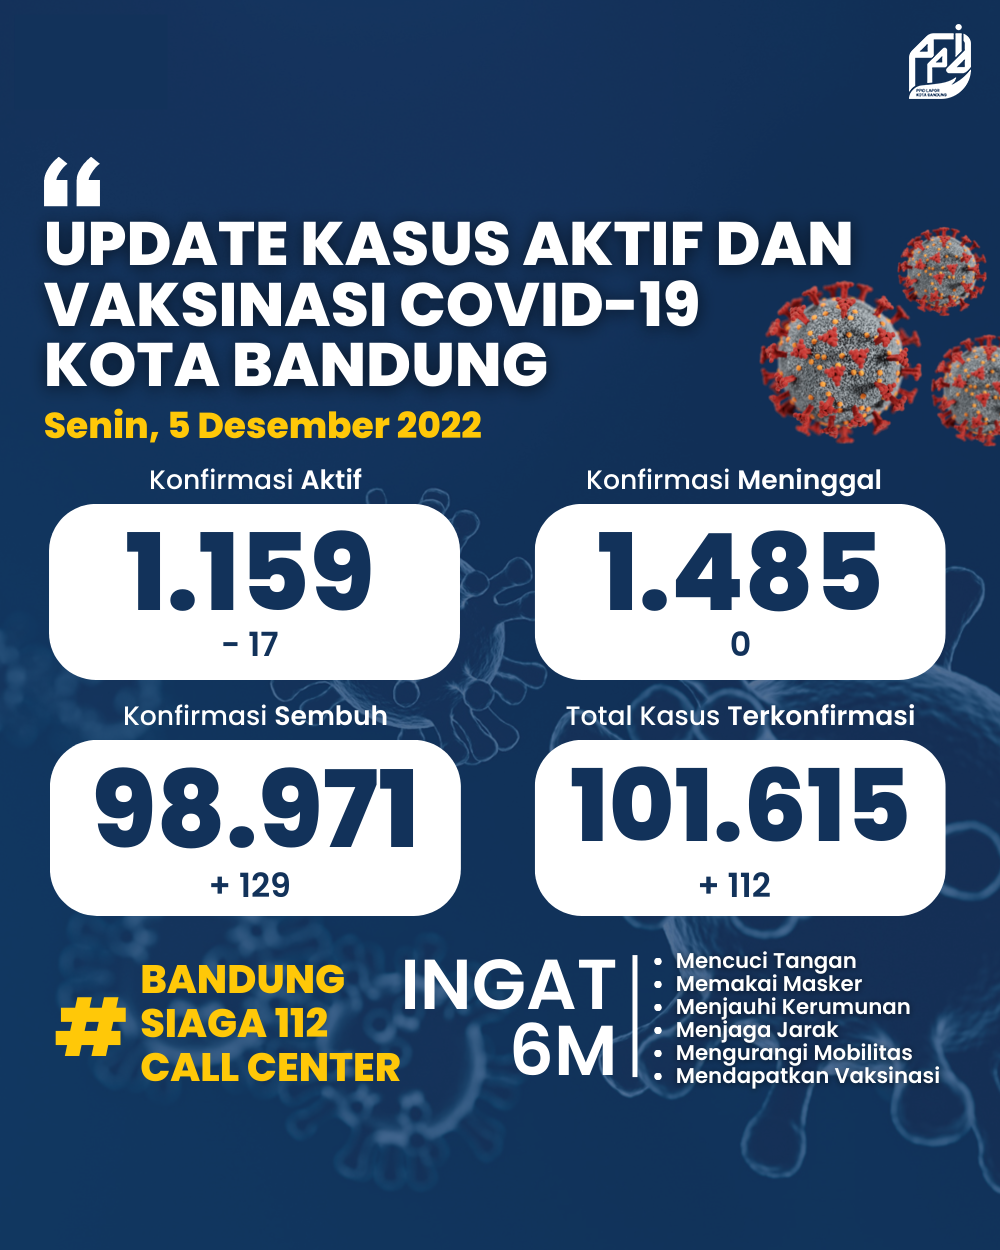 UPDATE STATISTIK COVID-19 DI KOTA BANDUNG PER TANGGAL 5 DESEMBER 2022